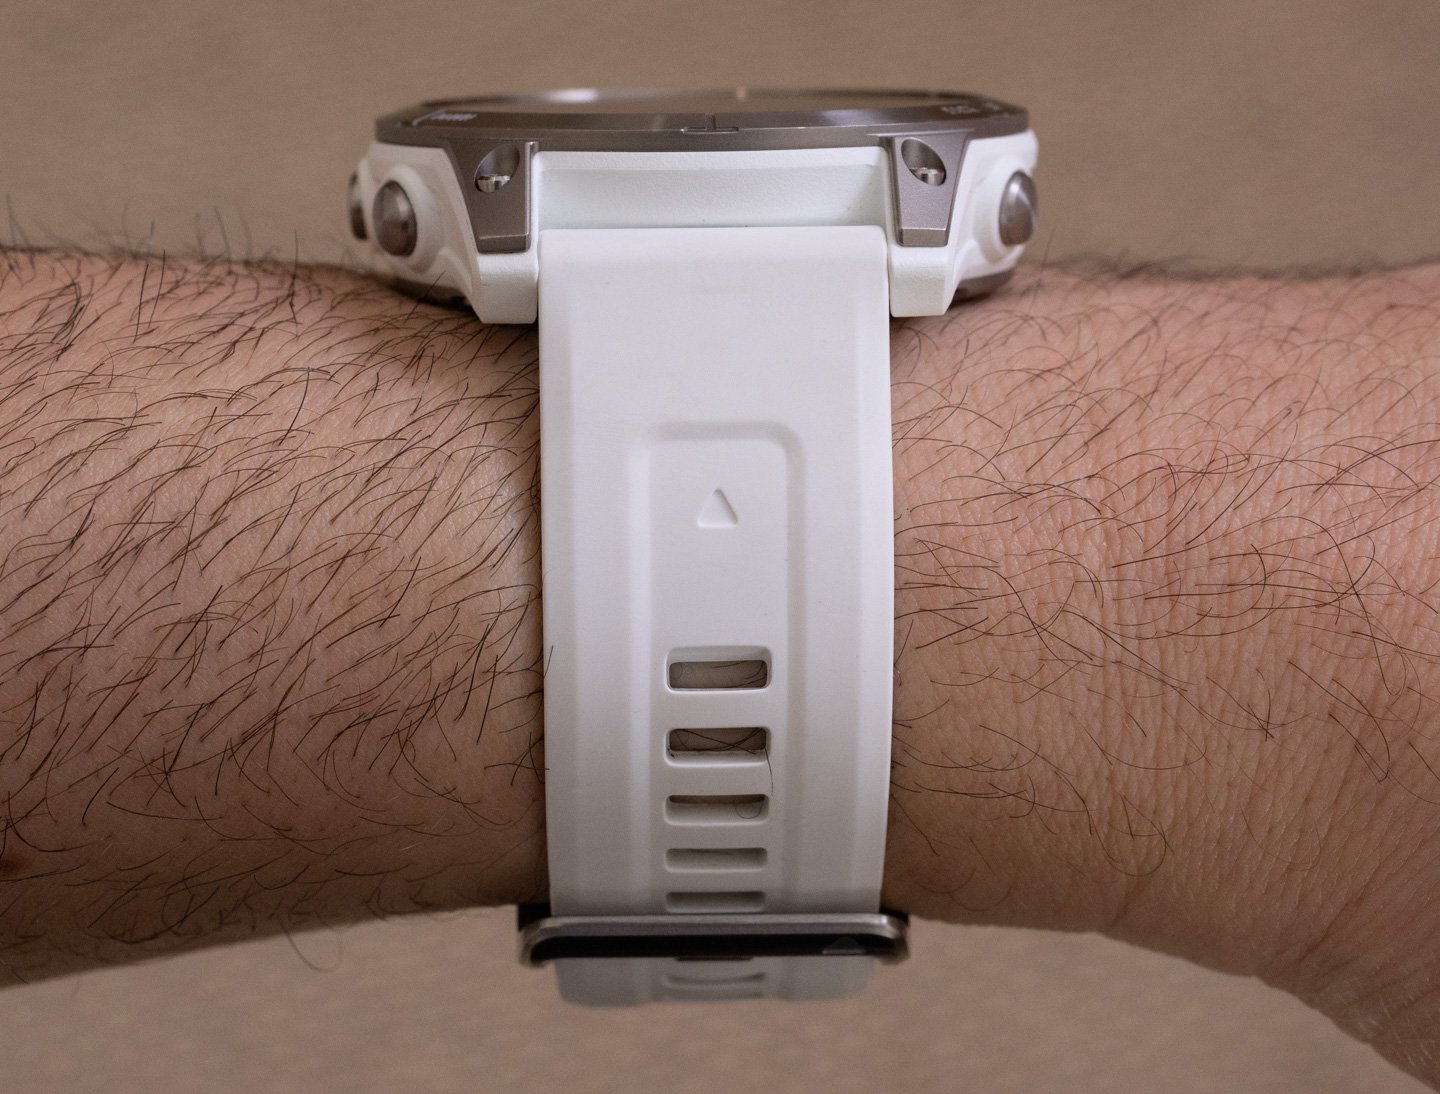 Обзор часов: Garmin Epix Generation 2 'Premium Active Smartwatch'